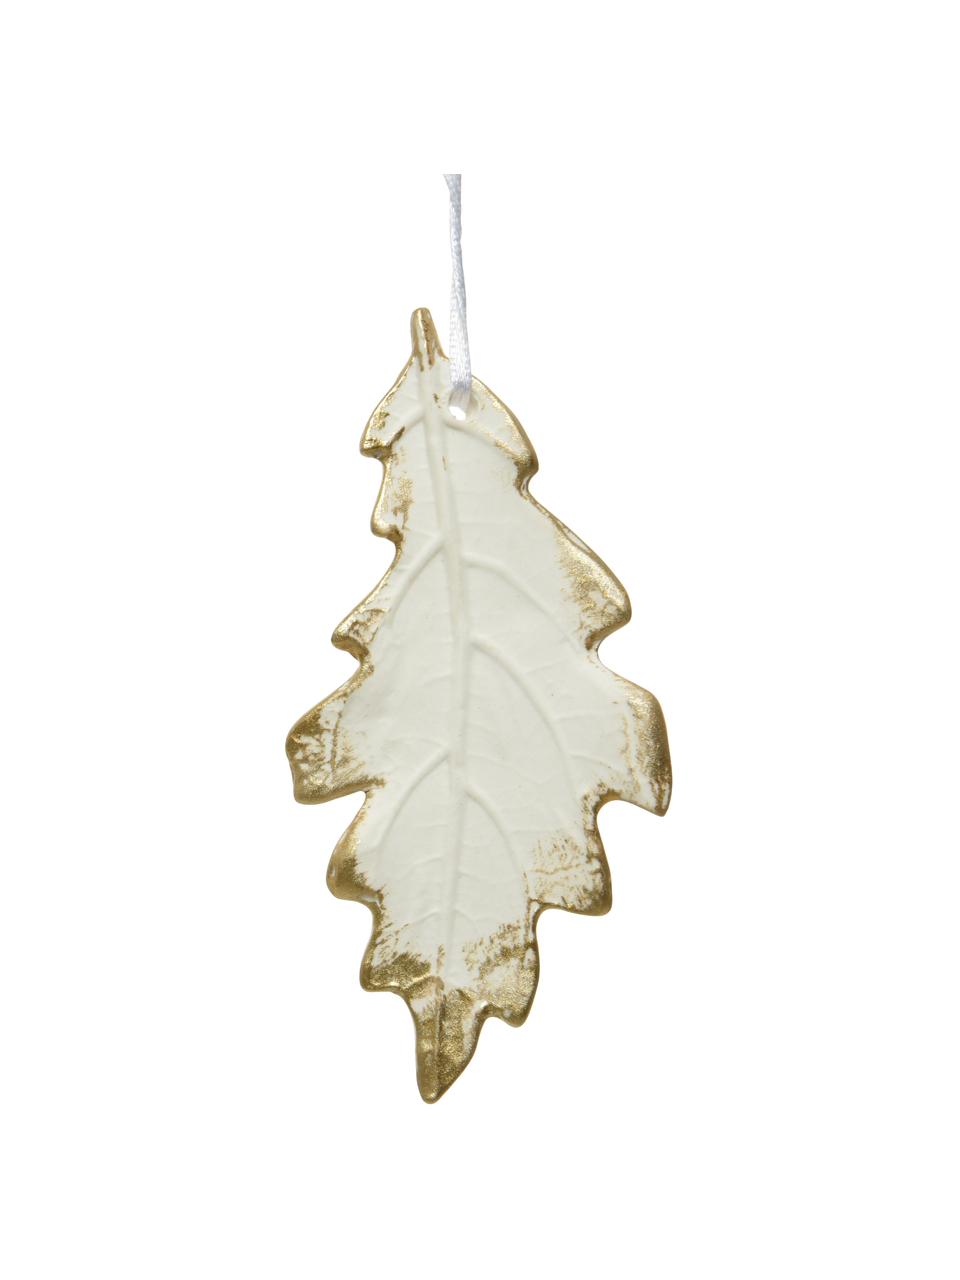 Komplet dekoracji wiszących Leaves, 3 elem., Biały, odcienie złotego, S 4 x W 13 cm